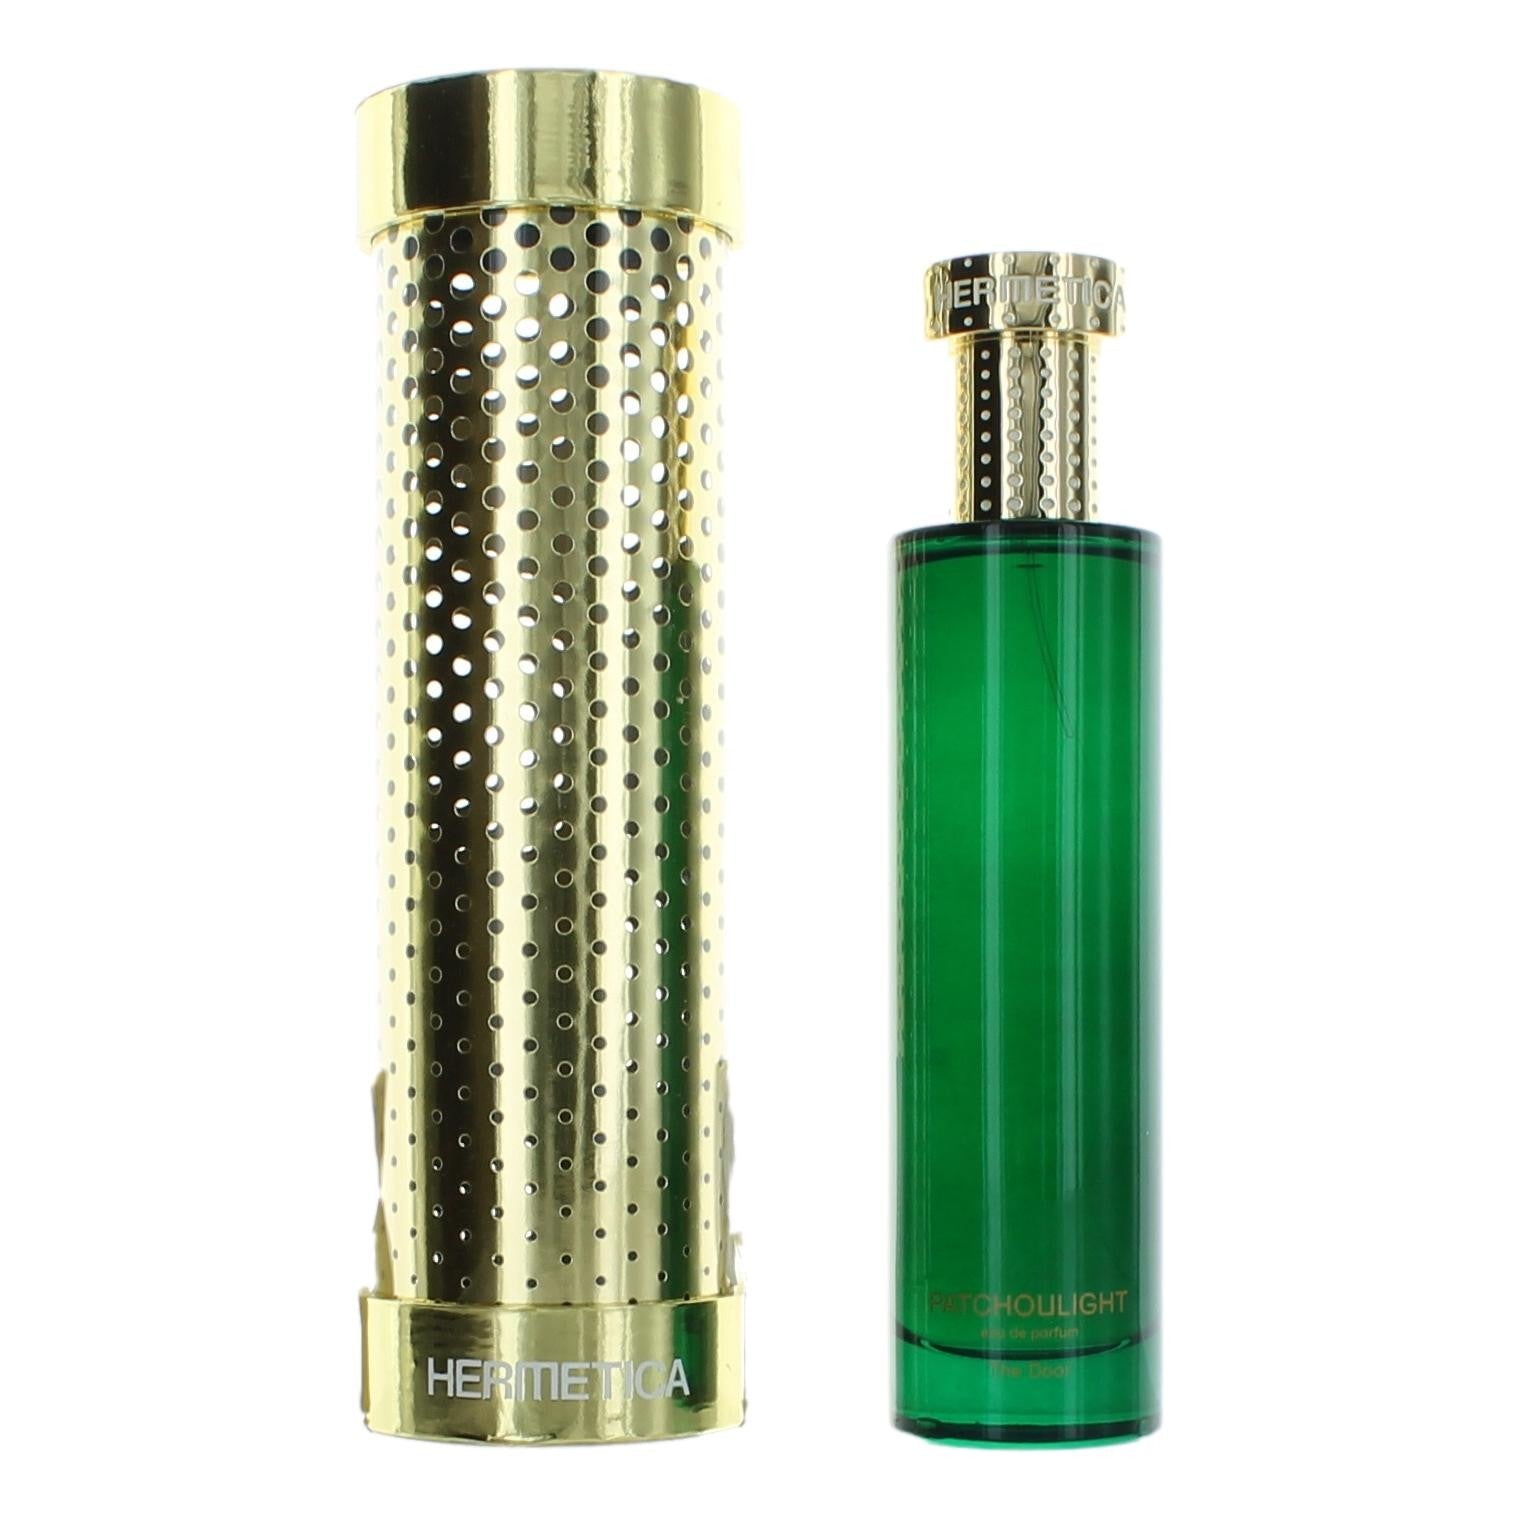 Bottle of Patchoulilight by Hermetica, 3.4 oz Eau De Parfum Spray for Unisex